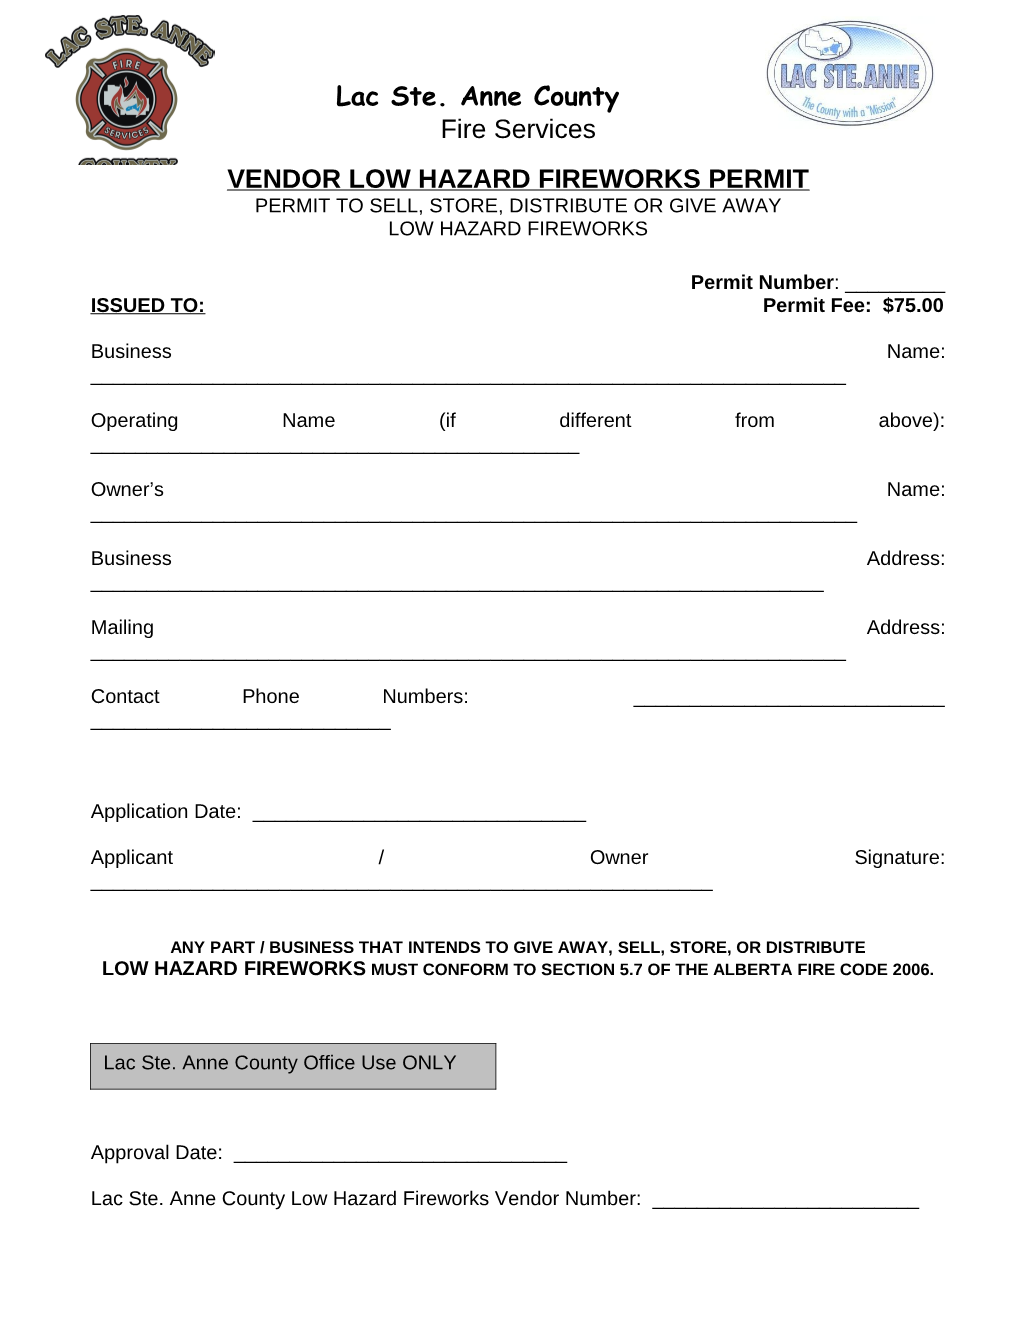 Vendor Low Hazardfireworks Permit